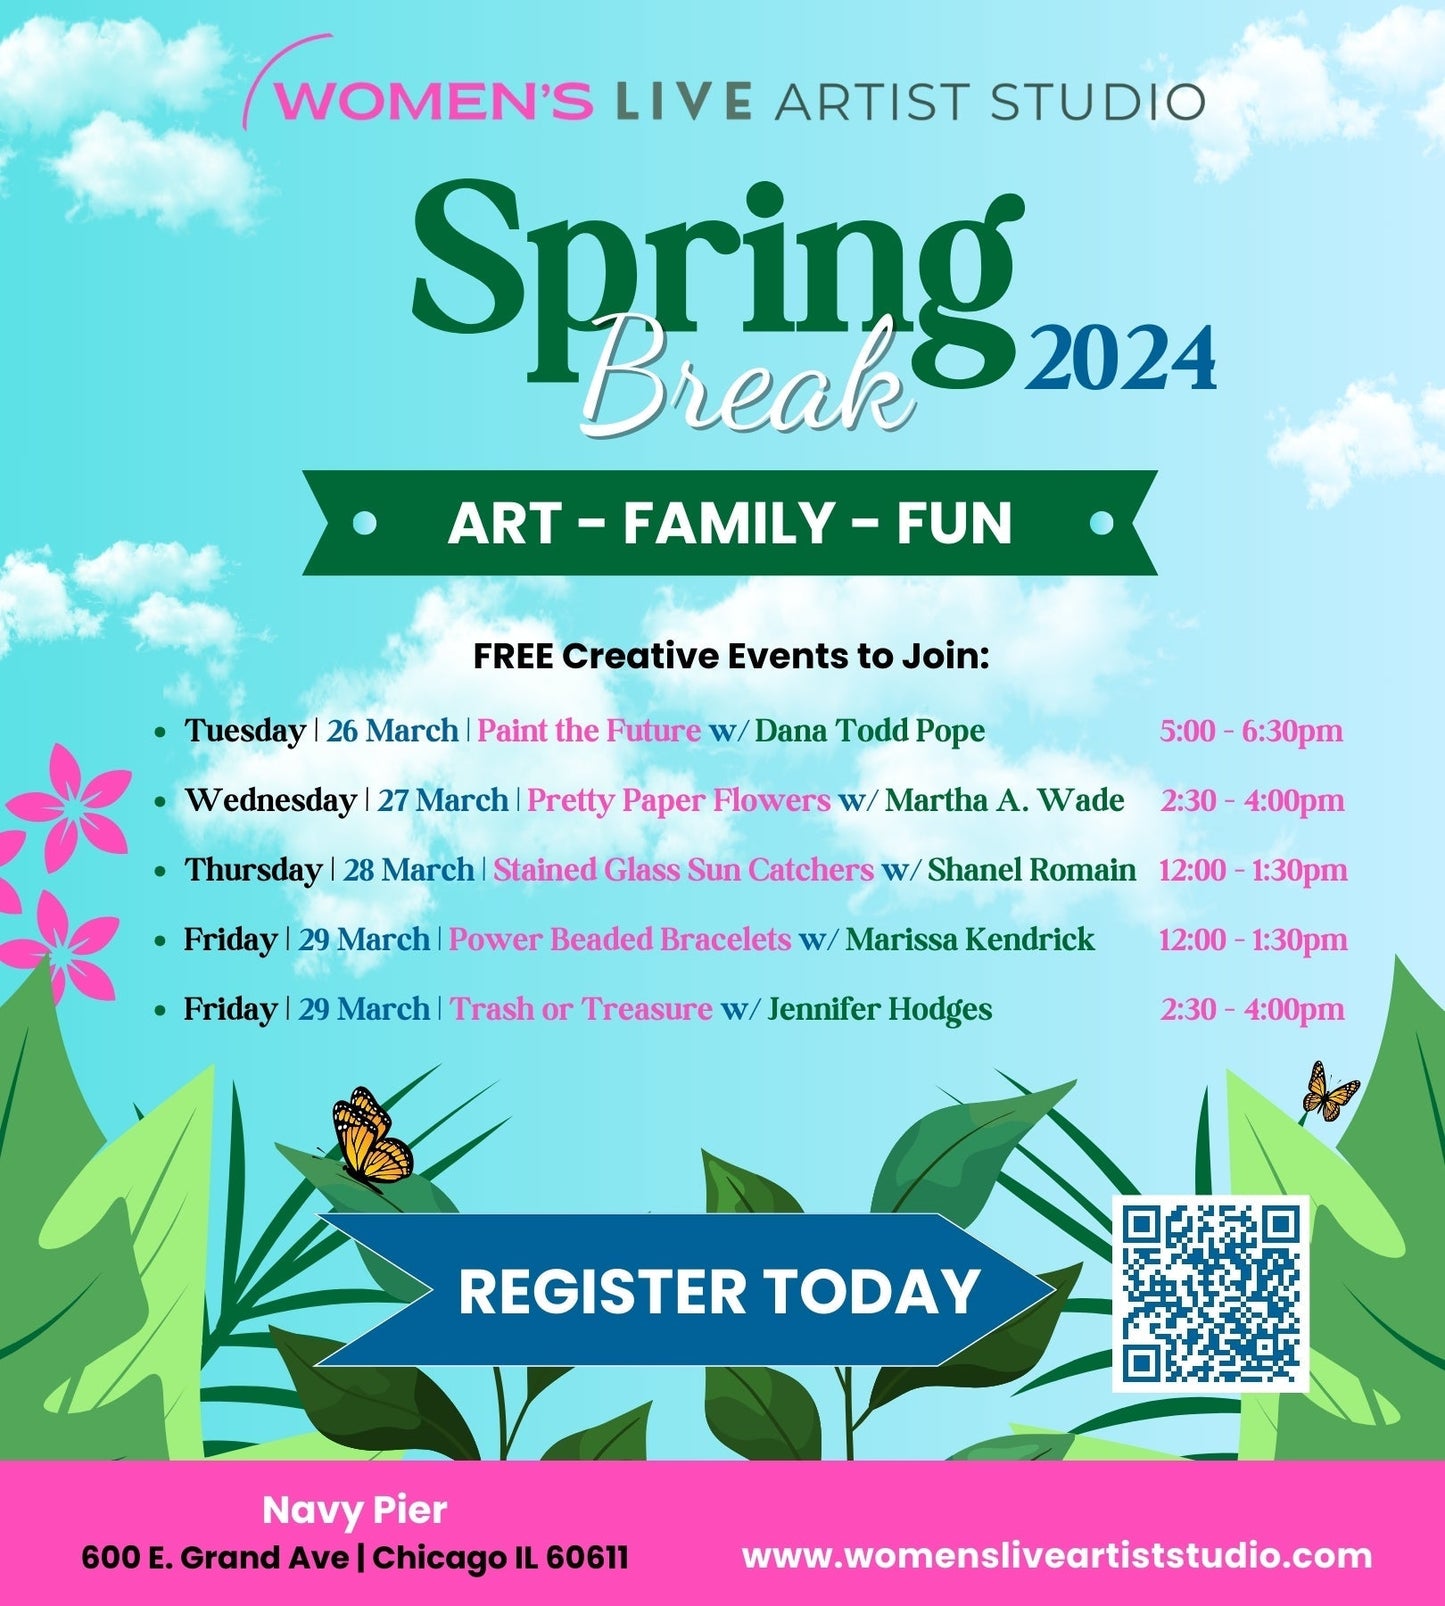 Spring Break FREE Workshops: Trash or Treasure